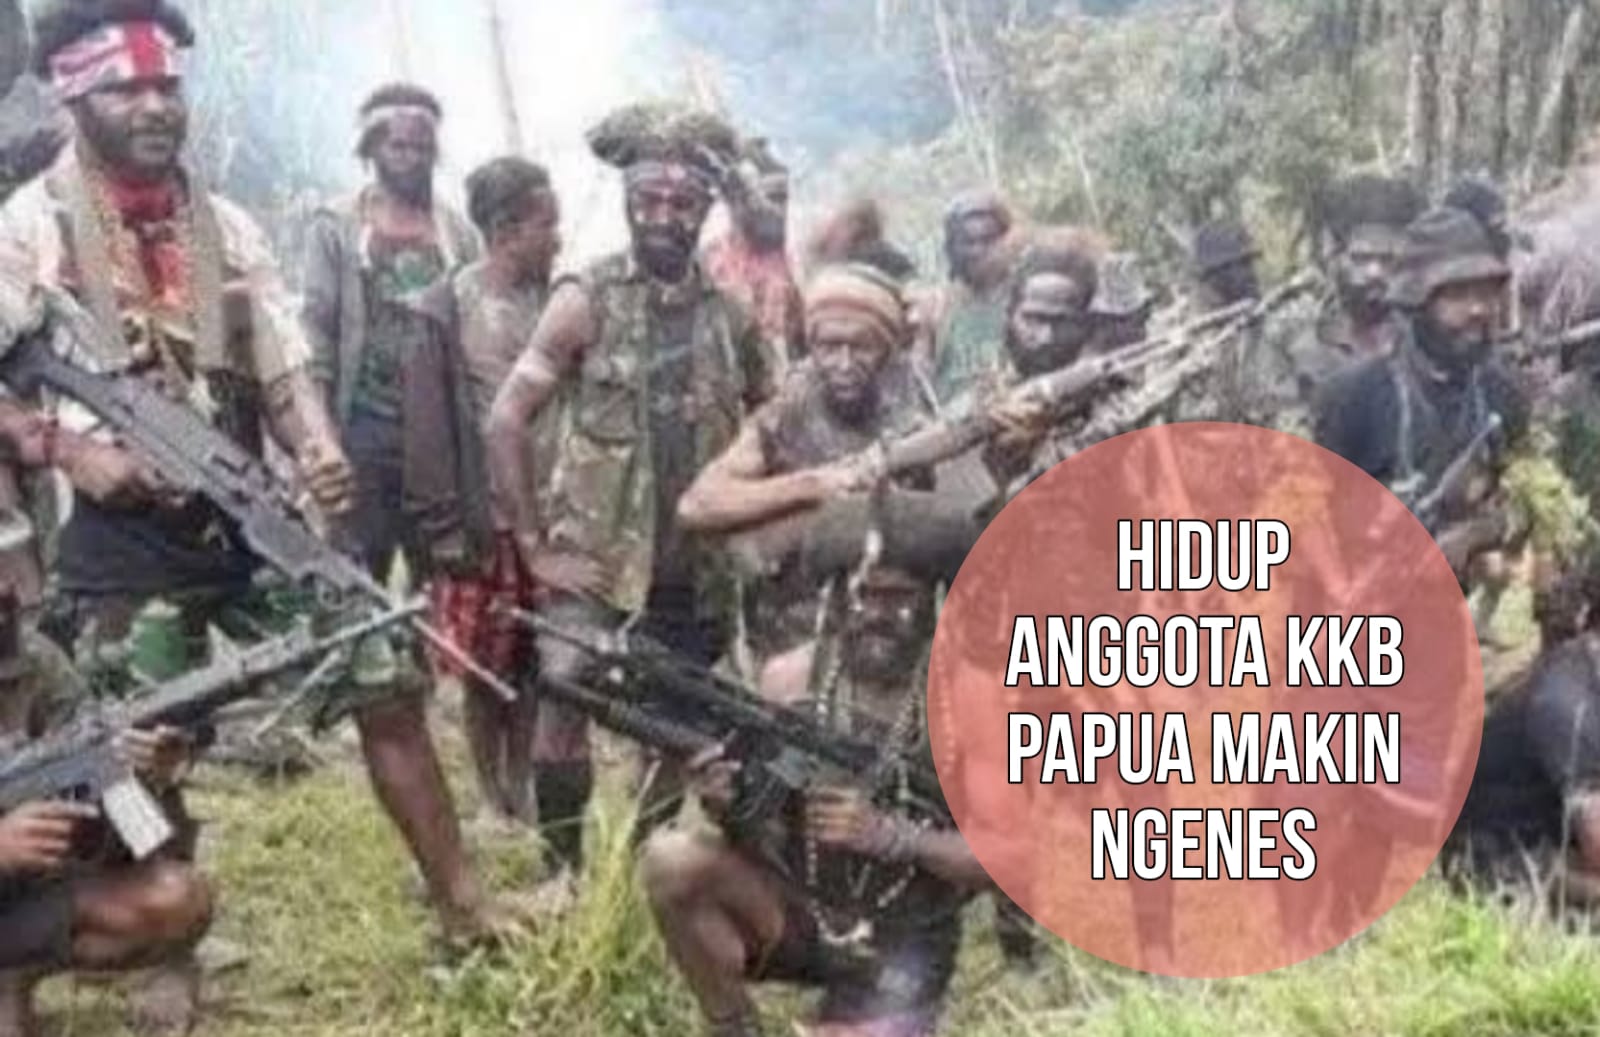 Pemasok Senjata Ditangkap, Hidup Anggota KKB Papua Makin Terhimpit dan Ngenes di Hutan